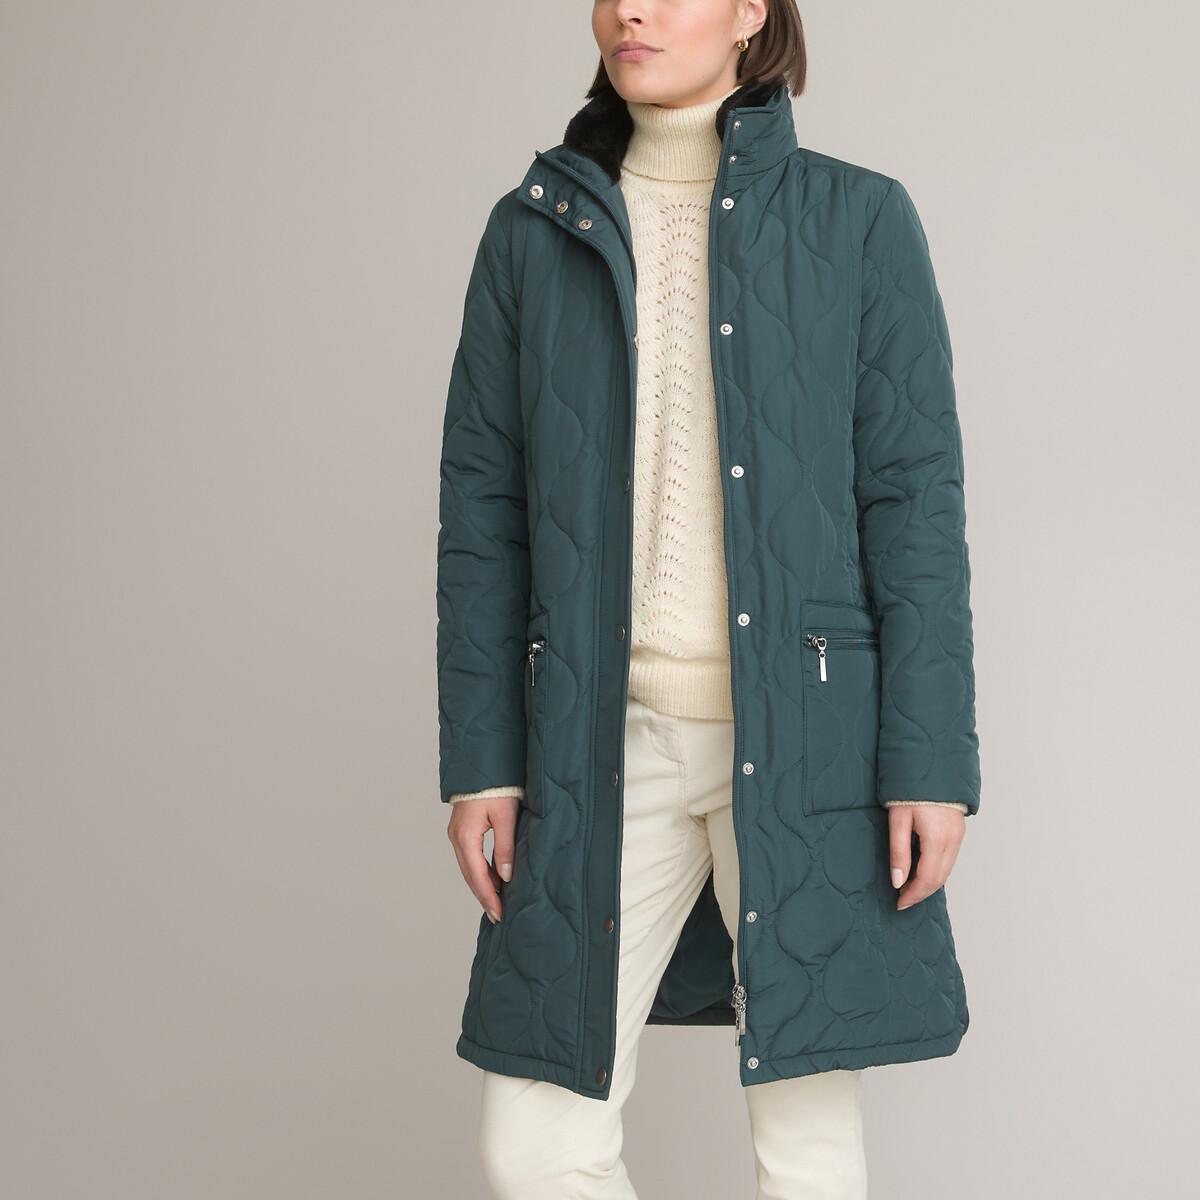 Куртка Стеганая средней длины застежка на молнию зимняя модель 42 (FR) - 48 (RUS) зеленый LaRedoute, размер 42 (FR) - 48 (RUS)